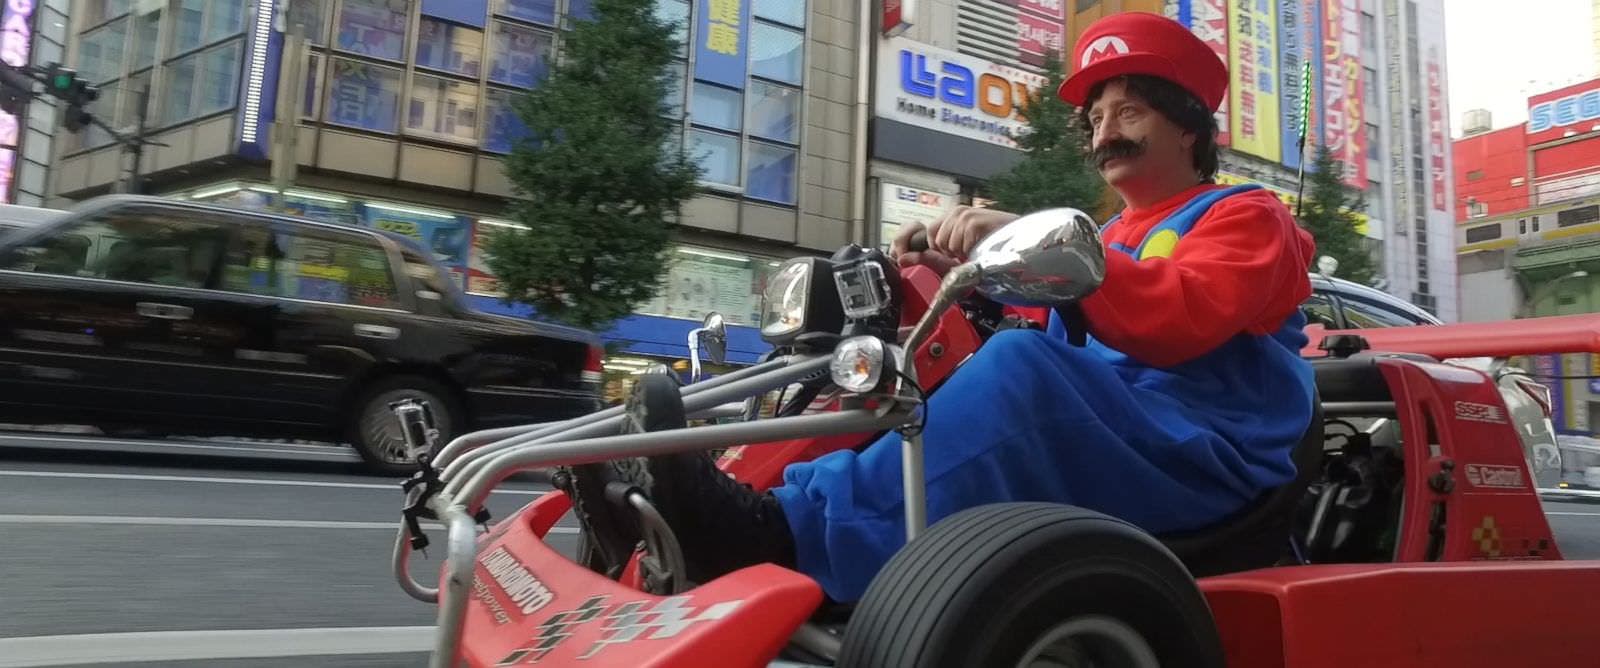 Siéntete como en ‘Mario Kart’ conduciendo un kart por las calles de Tokio